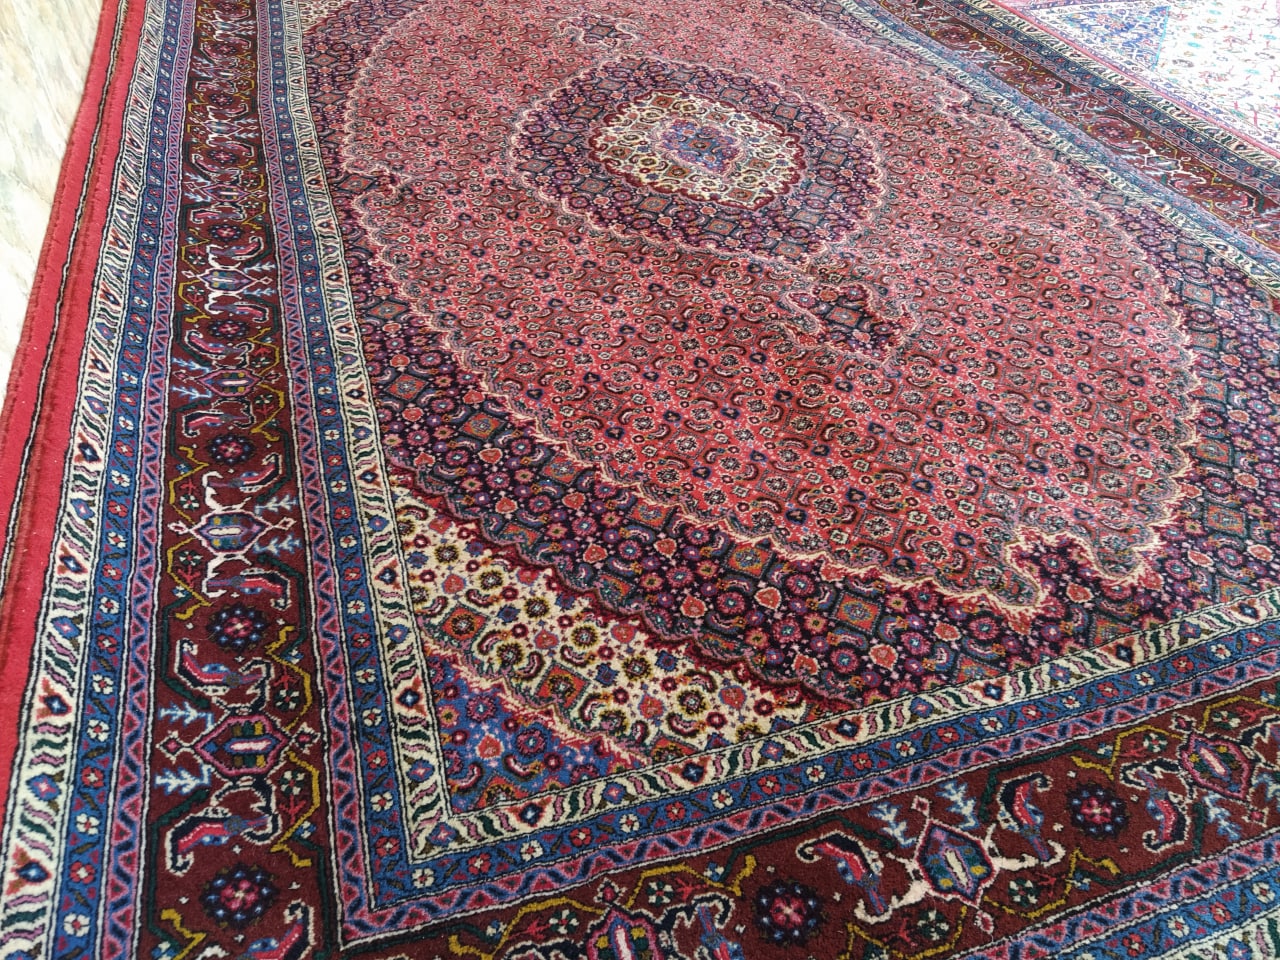 فرش دستباف 6 متری ریزماهی میراشرف دورلچک اردبیل – خرید از گالری فرش شکوری